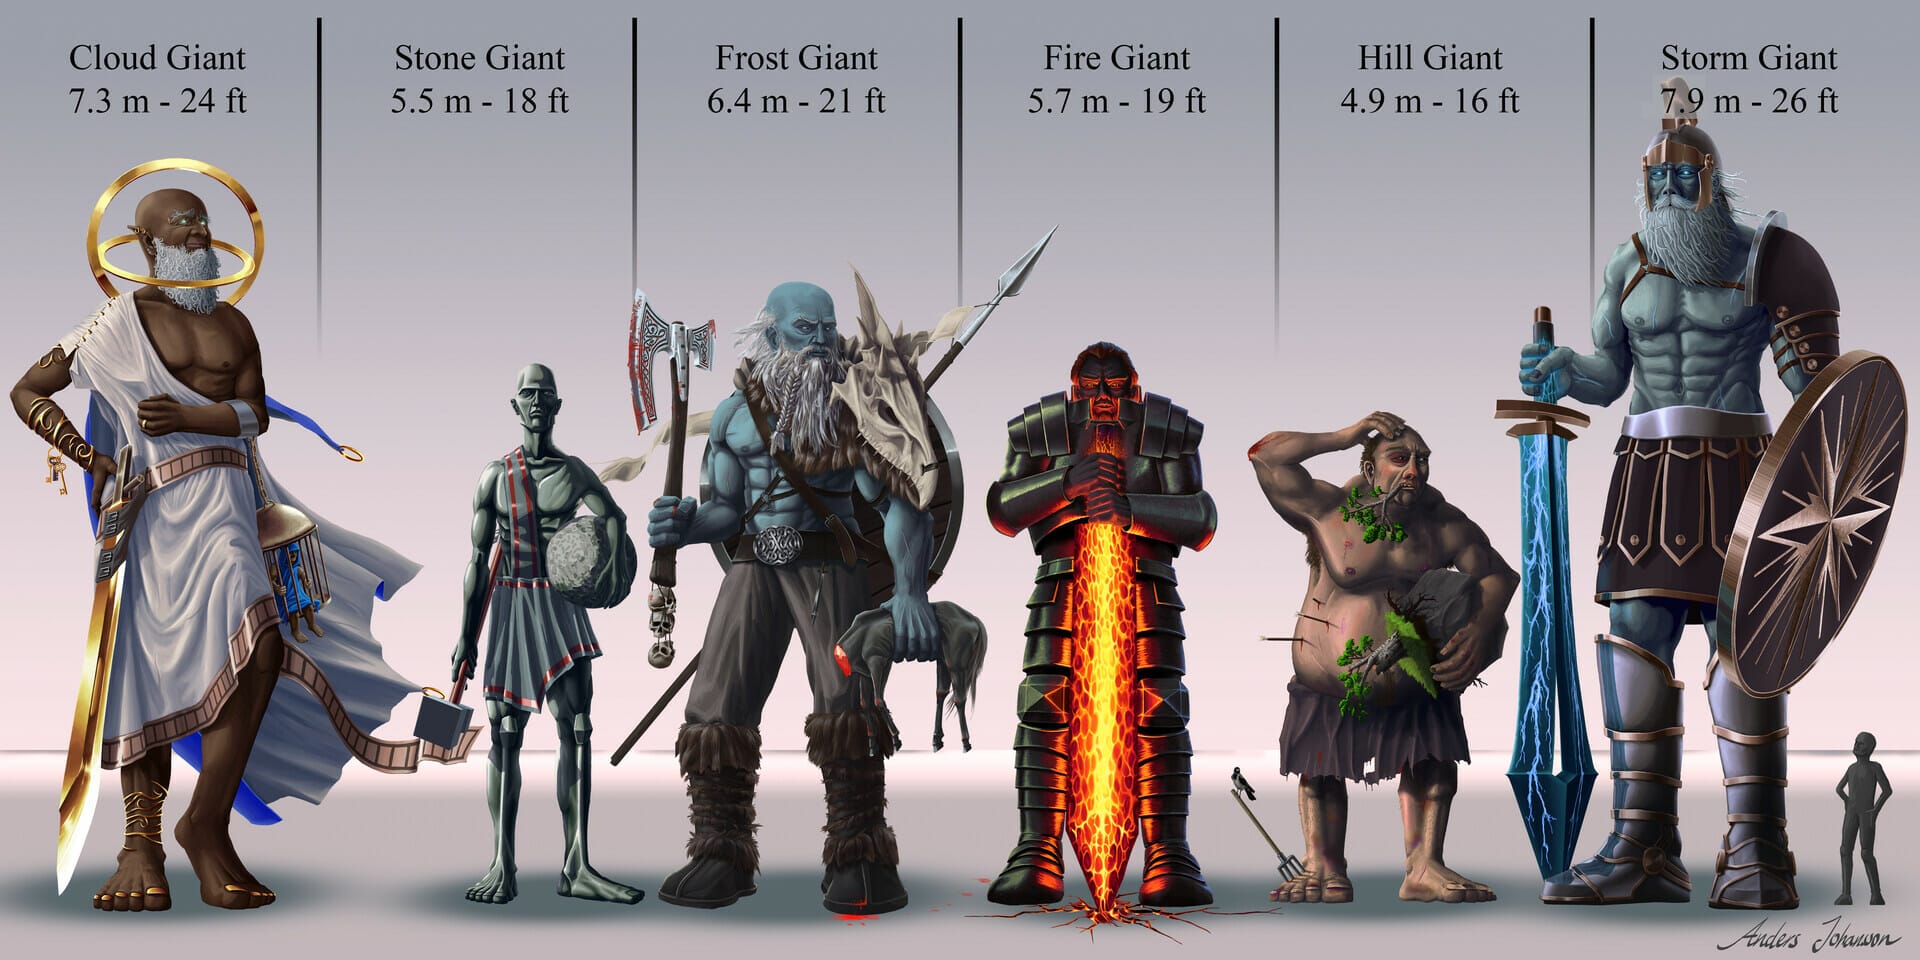 D&D giants size comparison